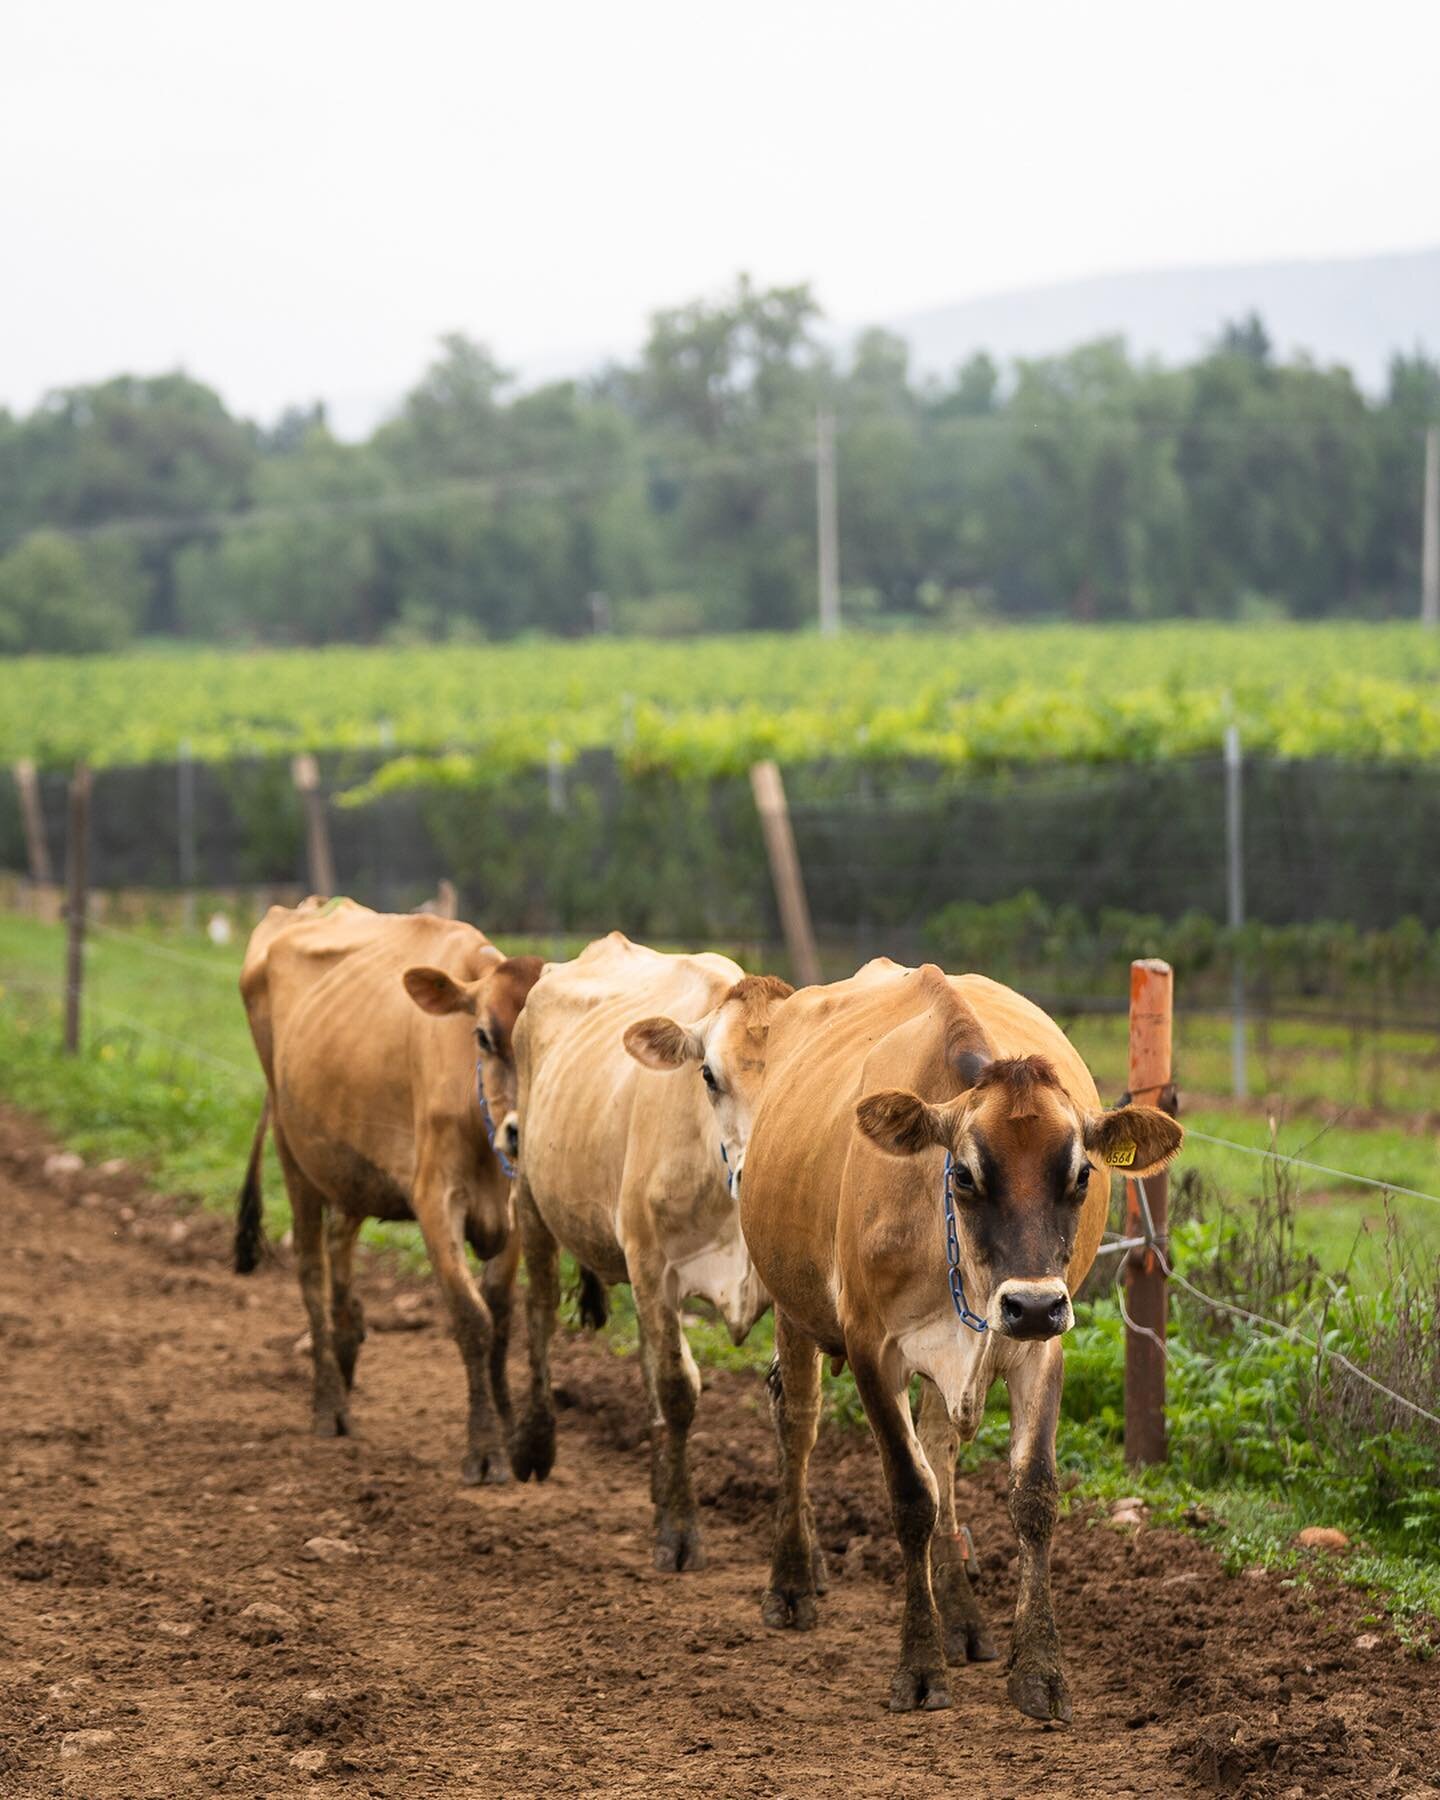 &iexcl;A nuestras vacas tambi&eacute;n les encanta pasear por los vi&ntilde;edos!

En el rancho se siente el verano y la lluvia ha enverdecido todas las plantas. Las vacas todos los d&iacute;as caminan por el rancho para llegar a descansar y comer en